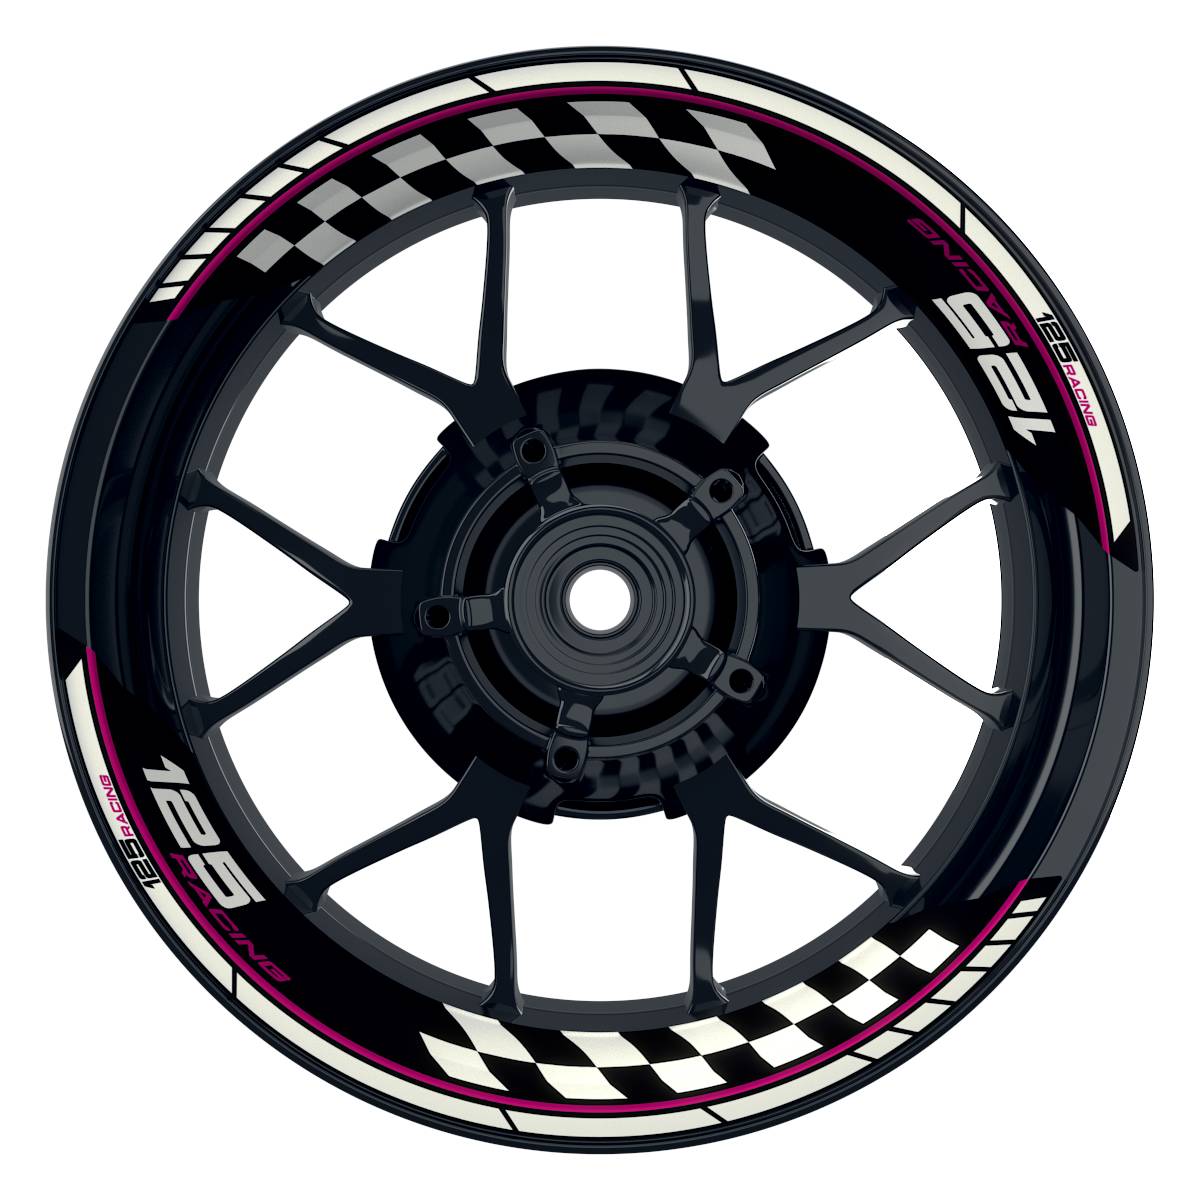 KTM Racing 125 Grid schwarz pink Frontansicht